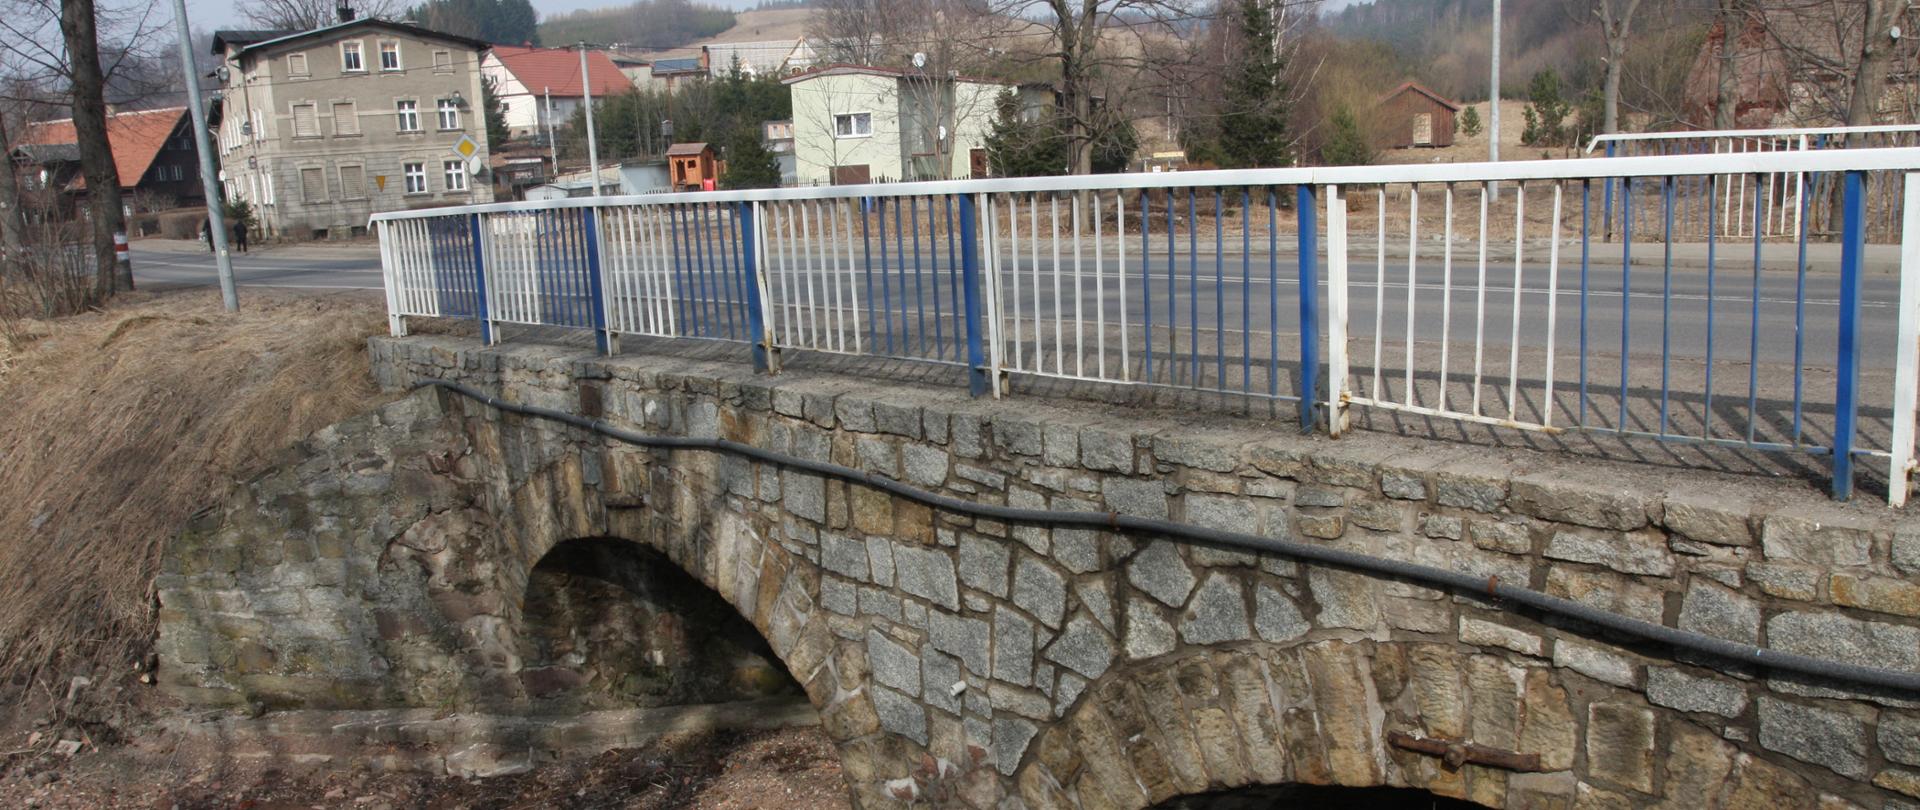 na zdjęciu widoczny most, w tle budynki